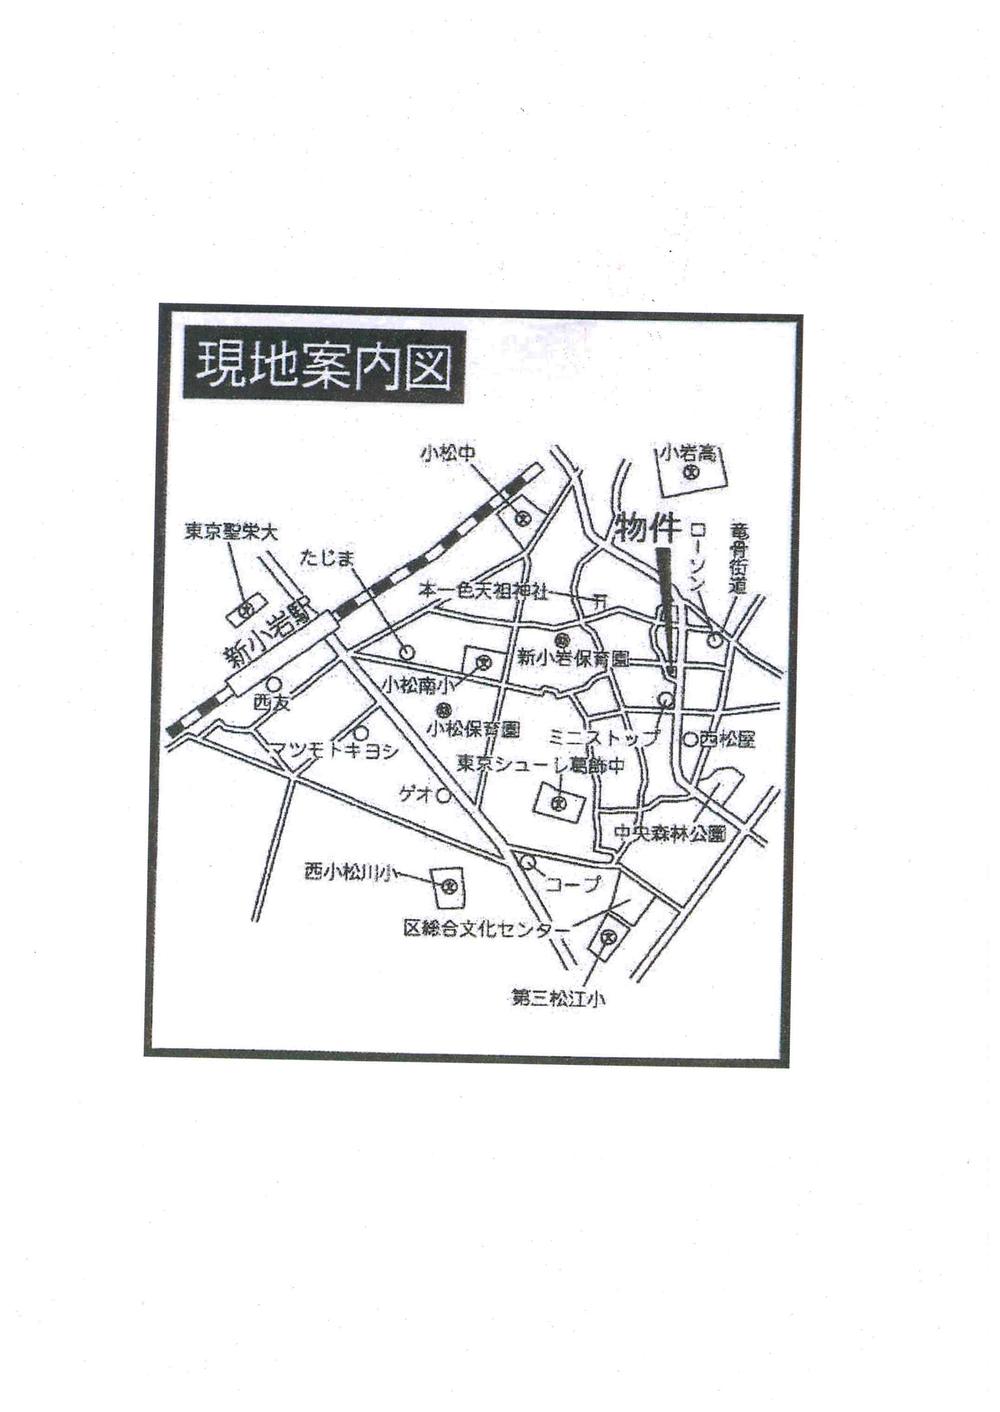 Local guide map. Edogawa Hon'isshoku 1-6